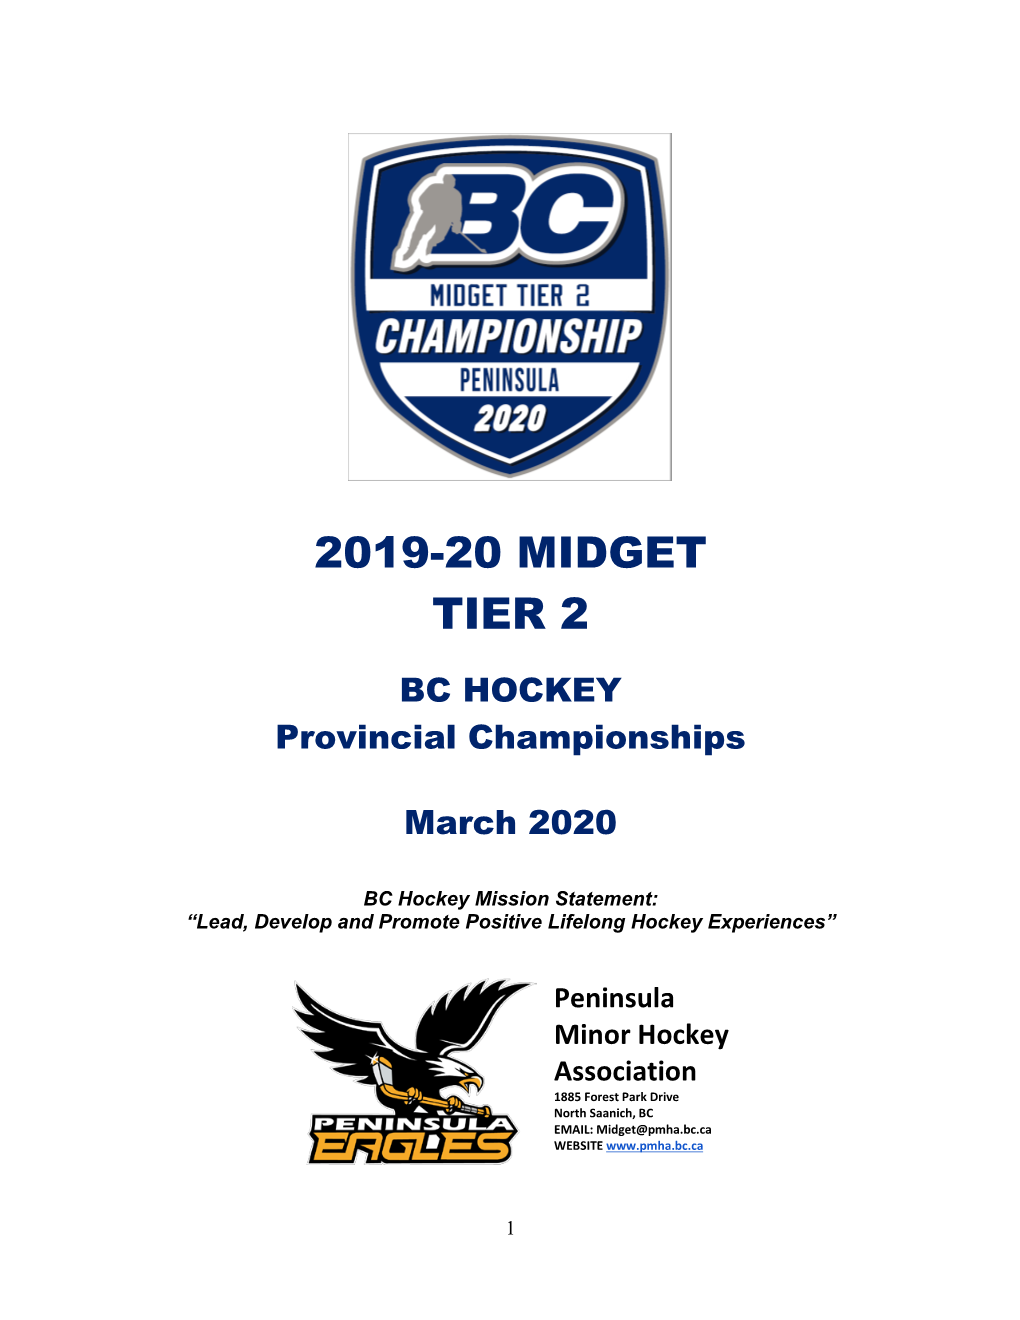 2019-20 Midget Tier 2